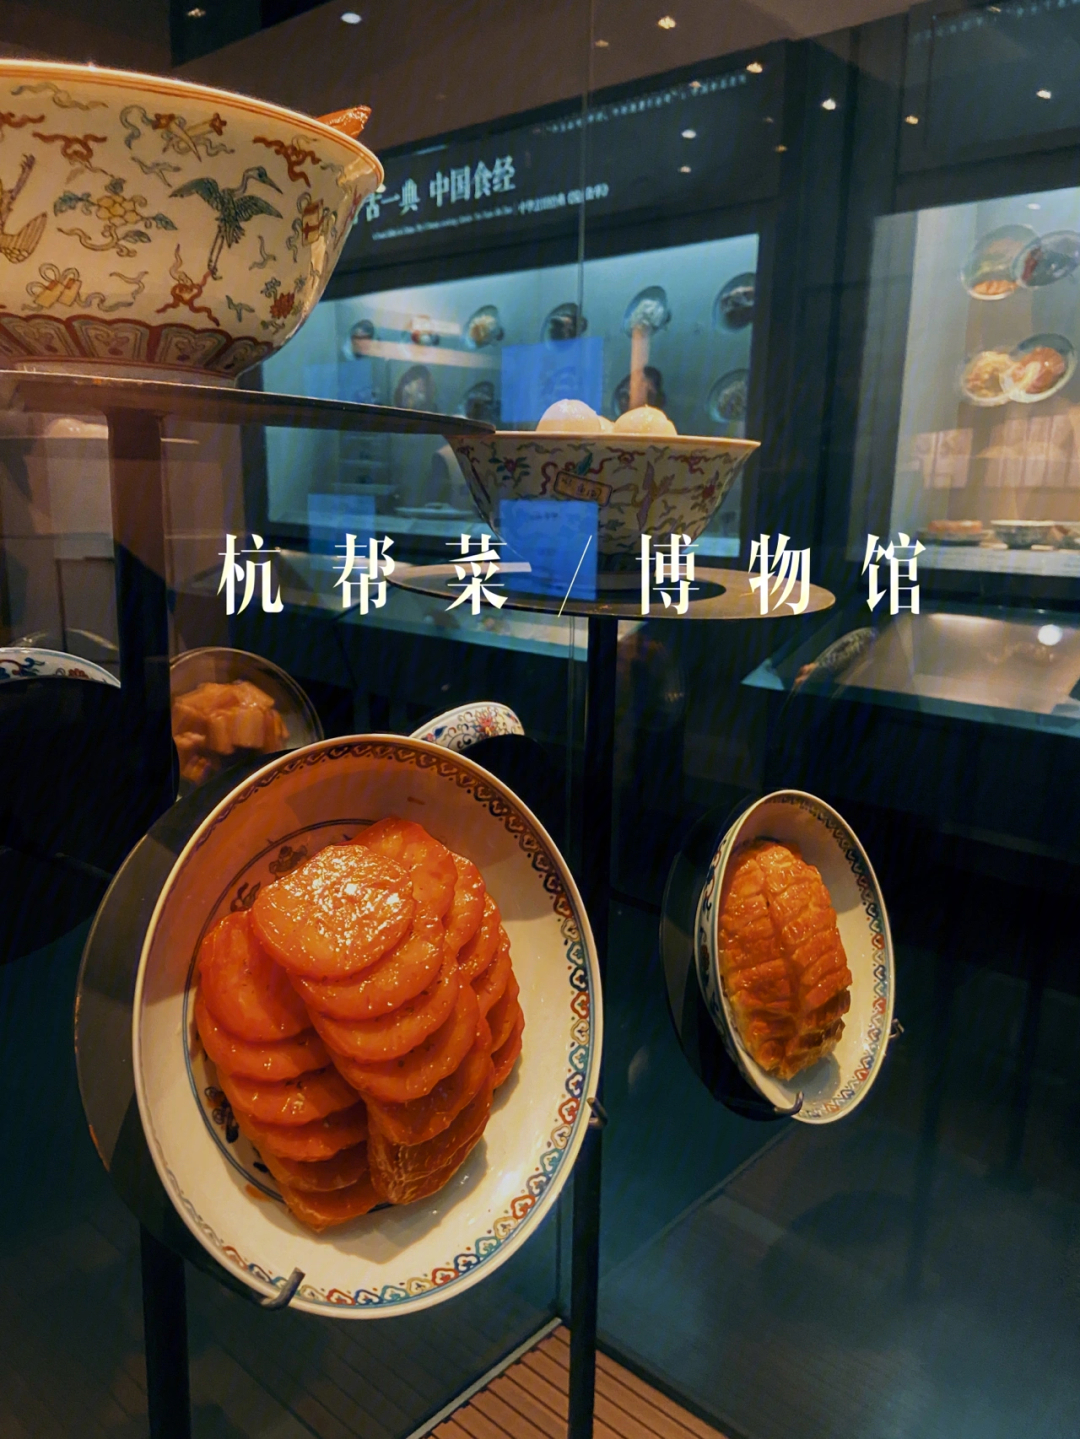 中国杭帮菜博物馆以美食为主题的博物馆